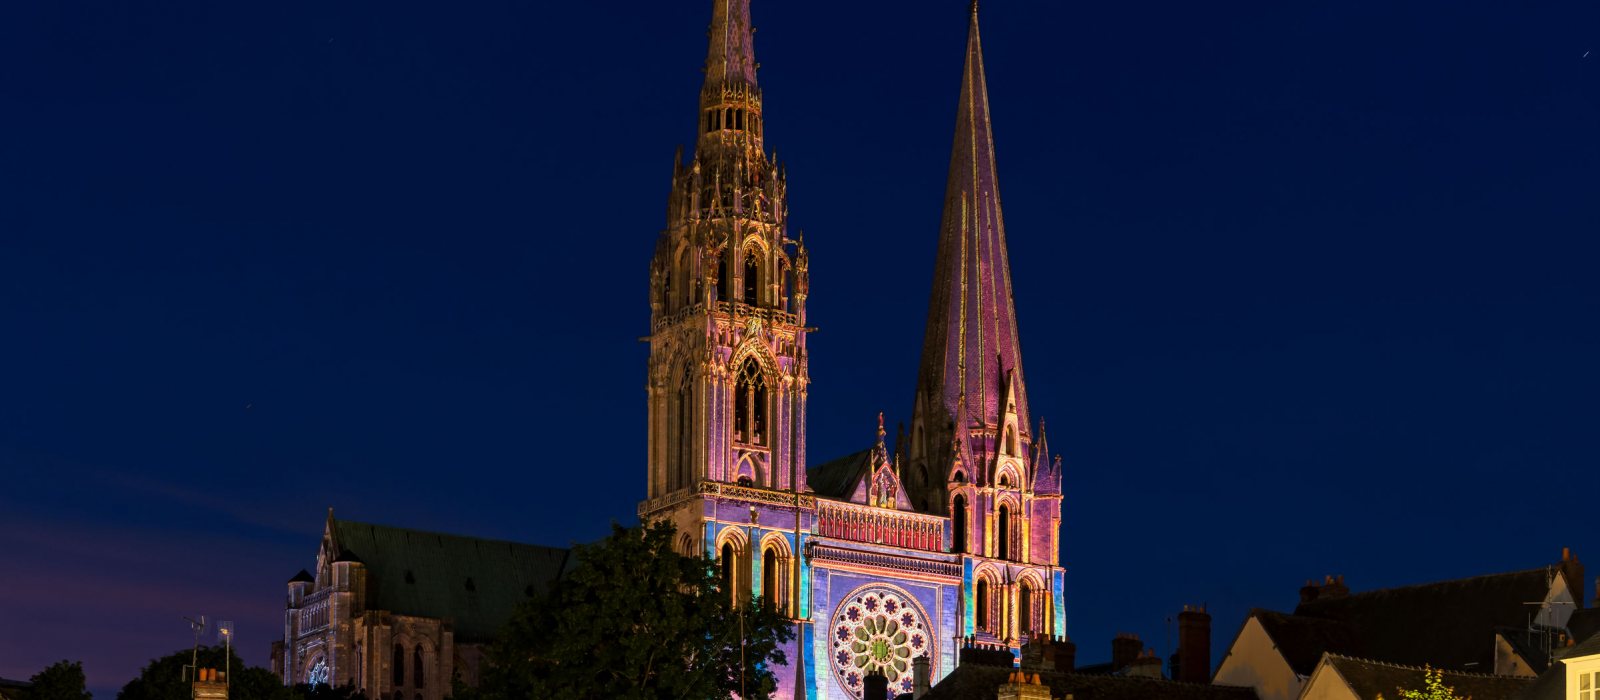 La fête de la lumière à Chartres : un événement unique au monde !